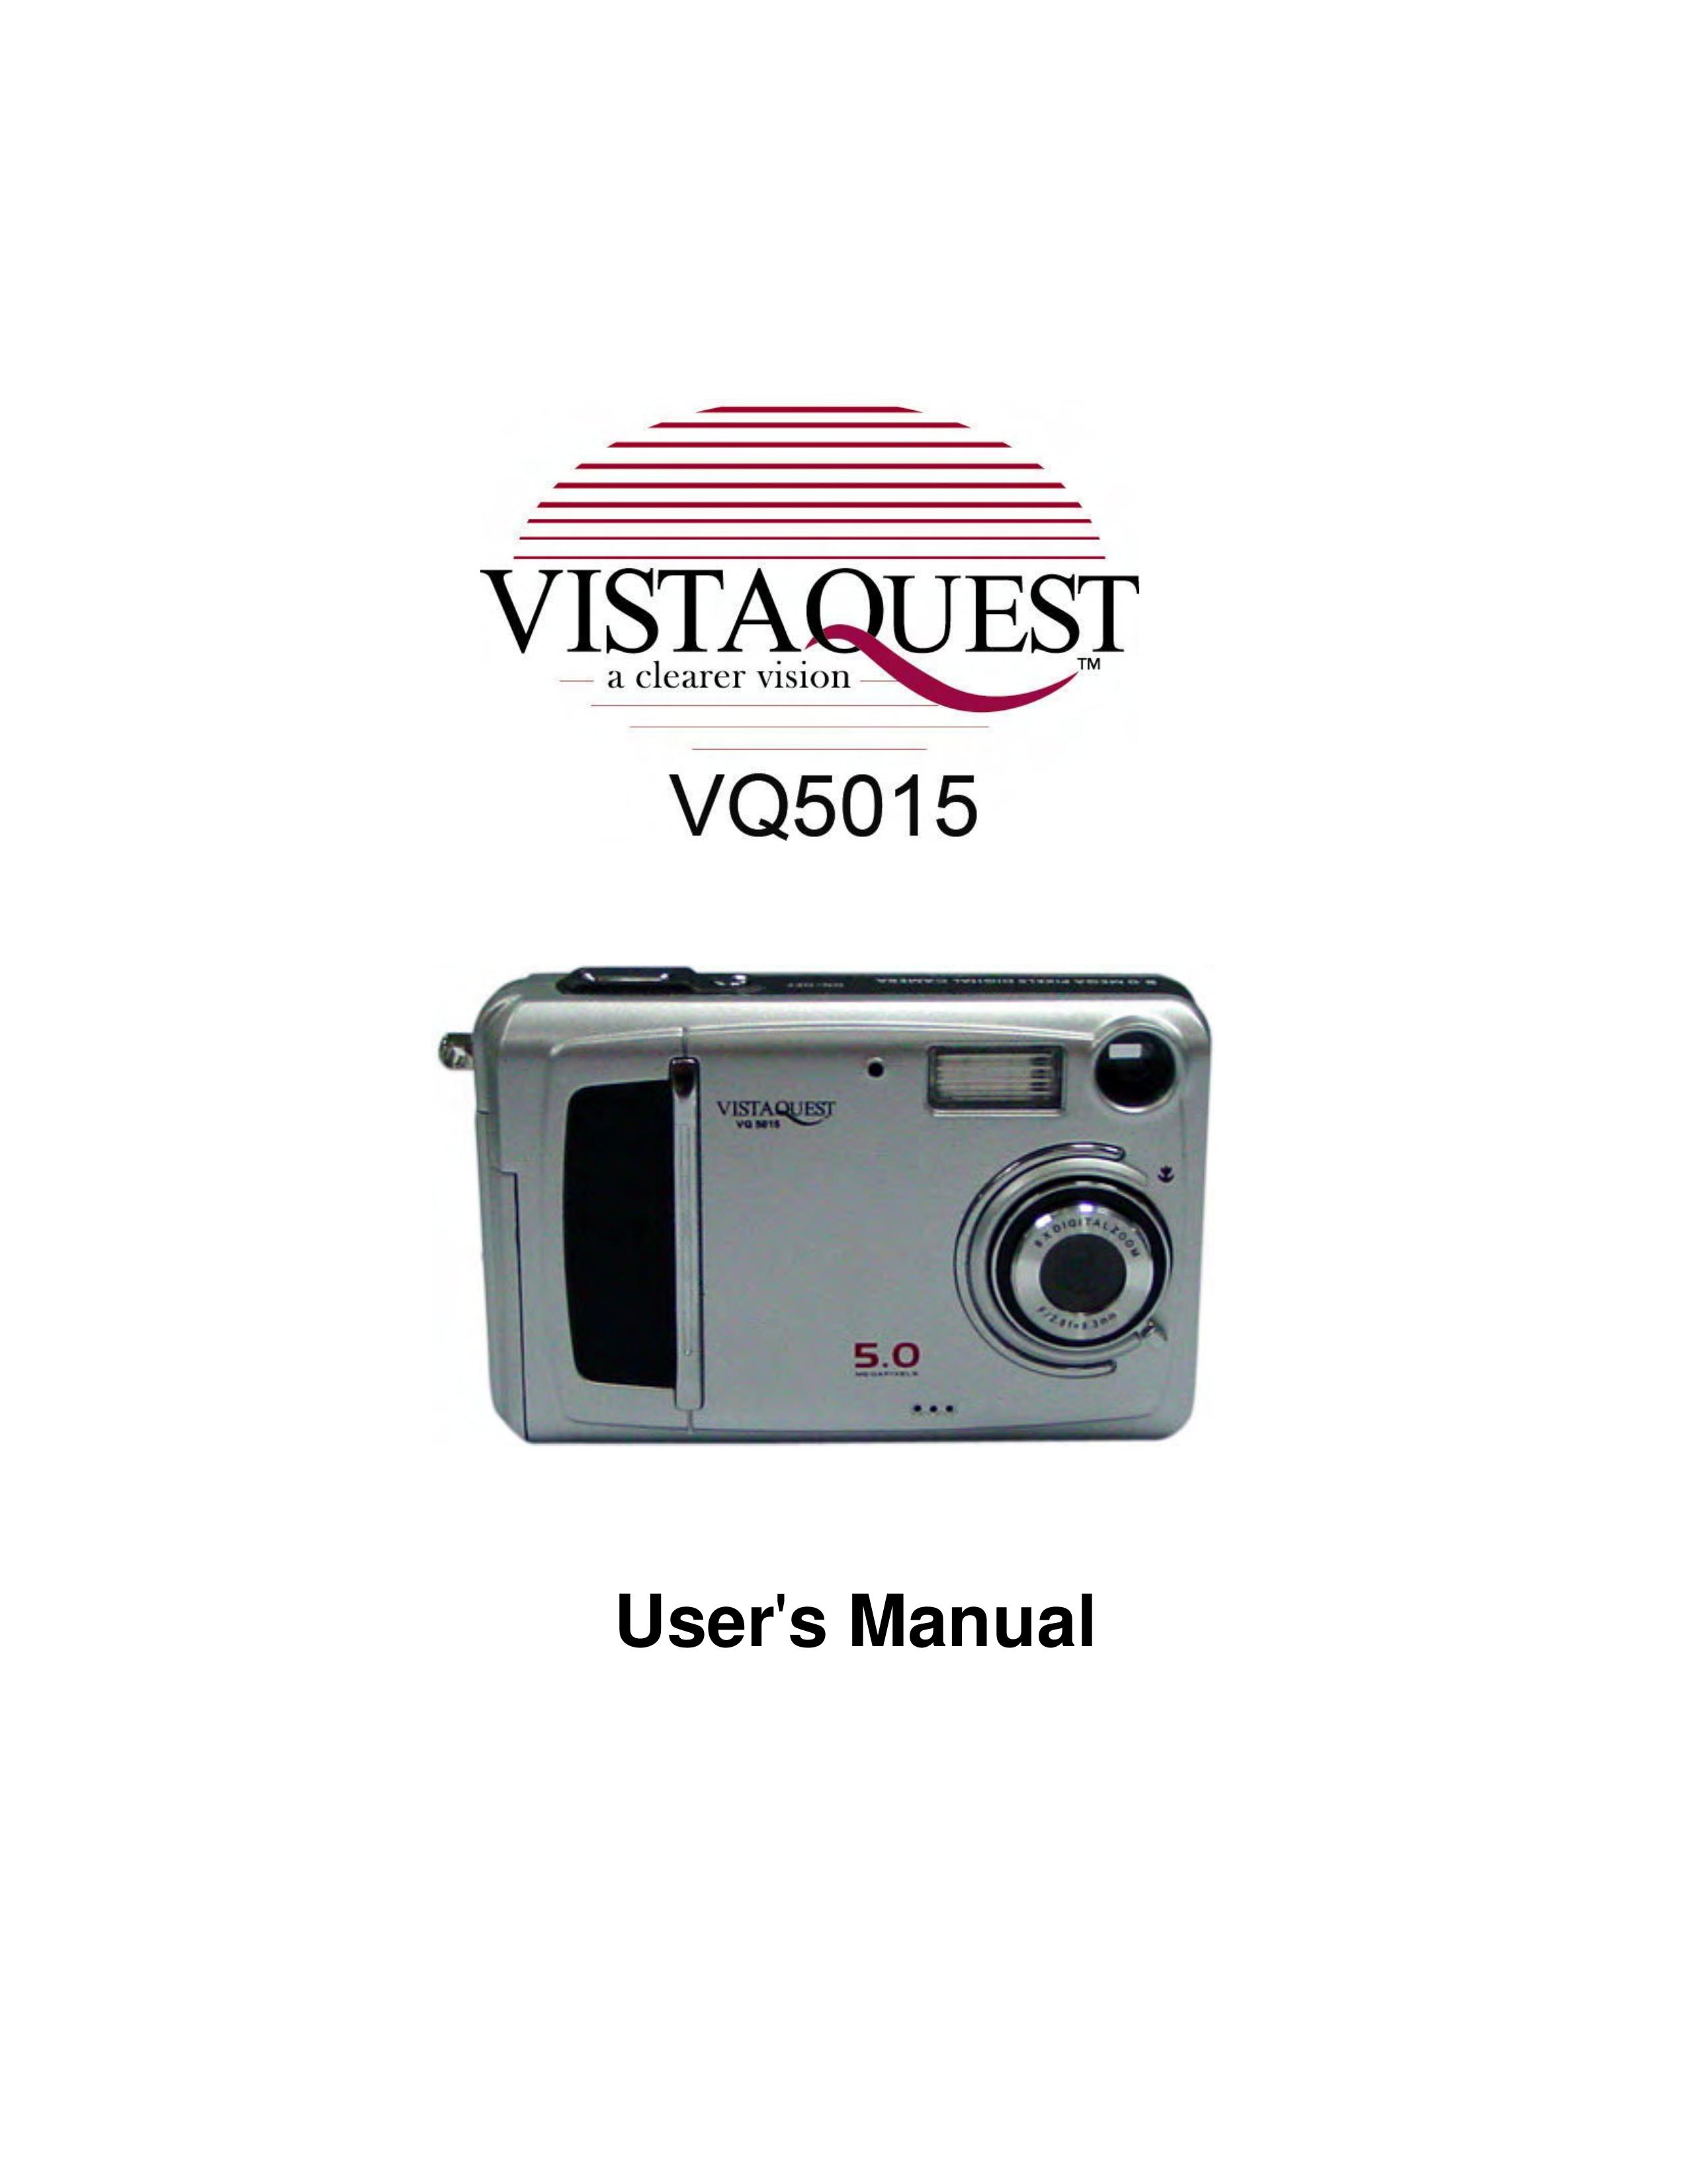 VistaQuest VQ5015 Digital Camera User Manual